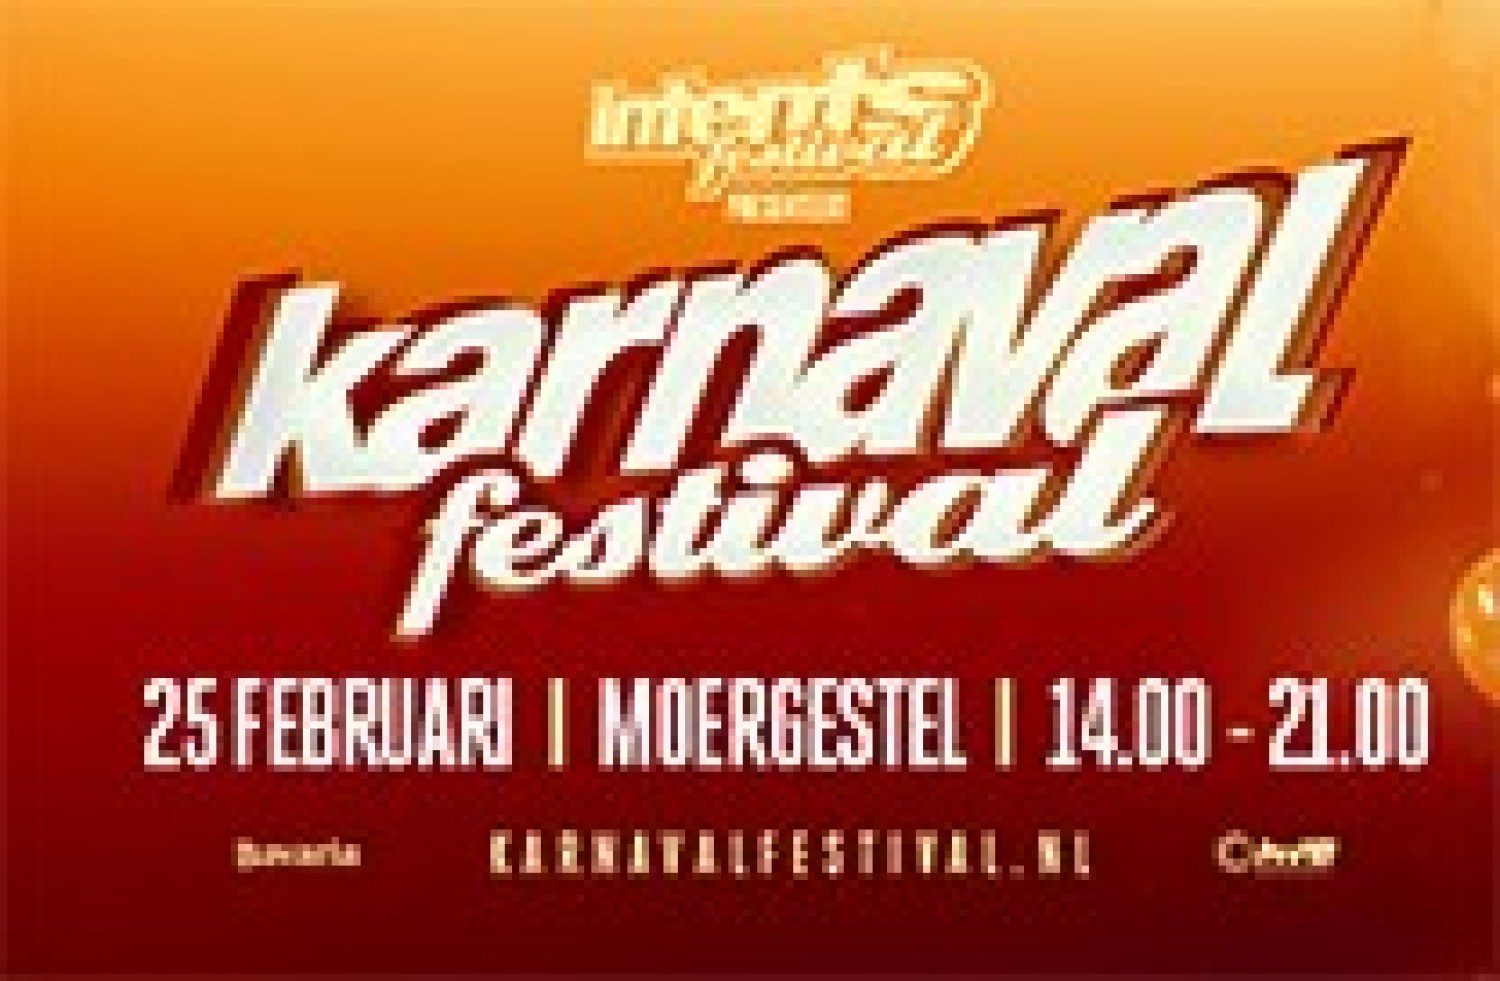 Party report: Karnaval Festival, Moergestel (25-02-2017)